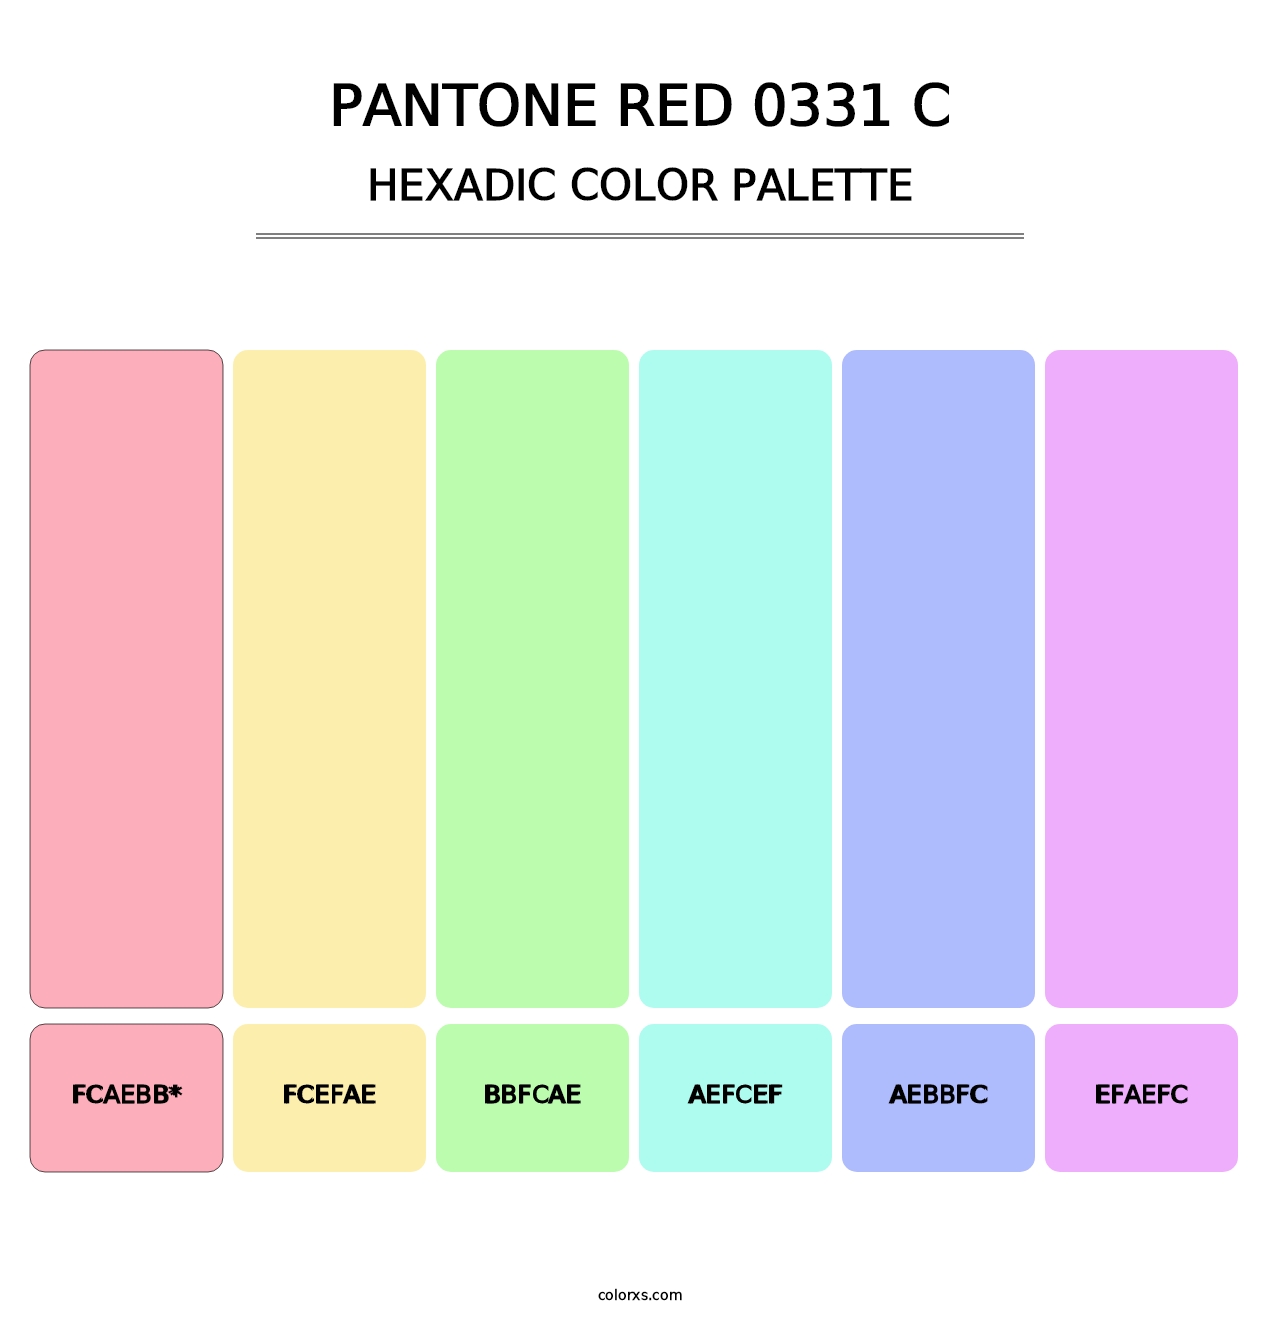 PANTONE Red 0331 C - Hexadic Color Palette